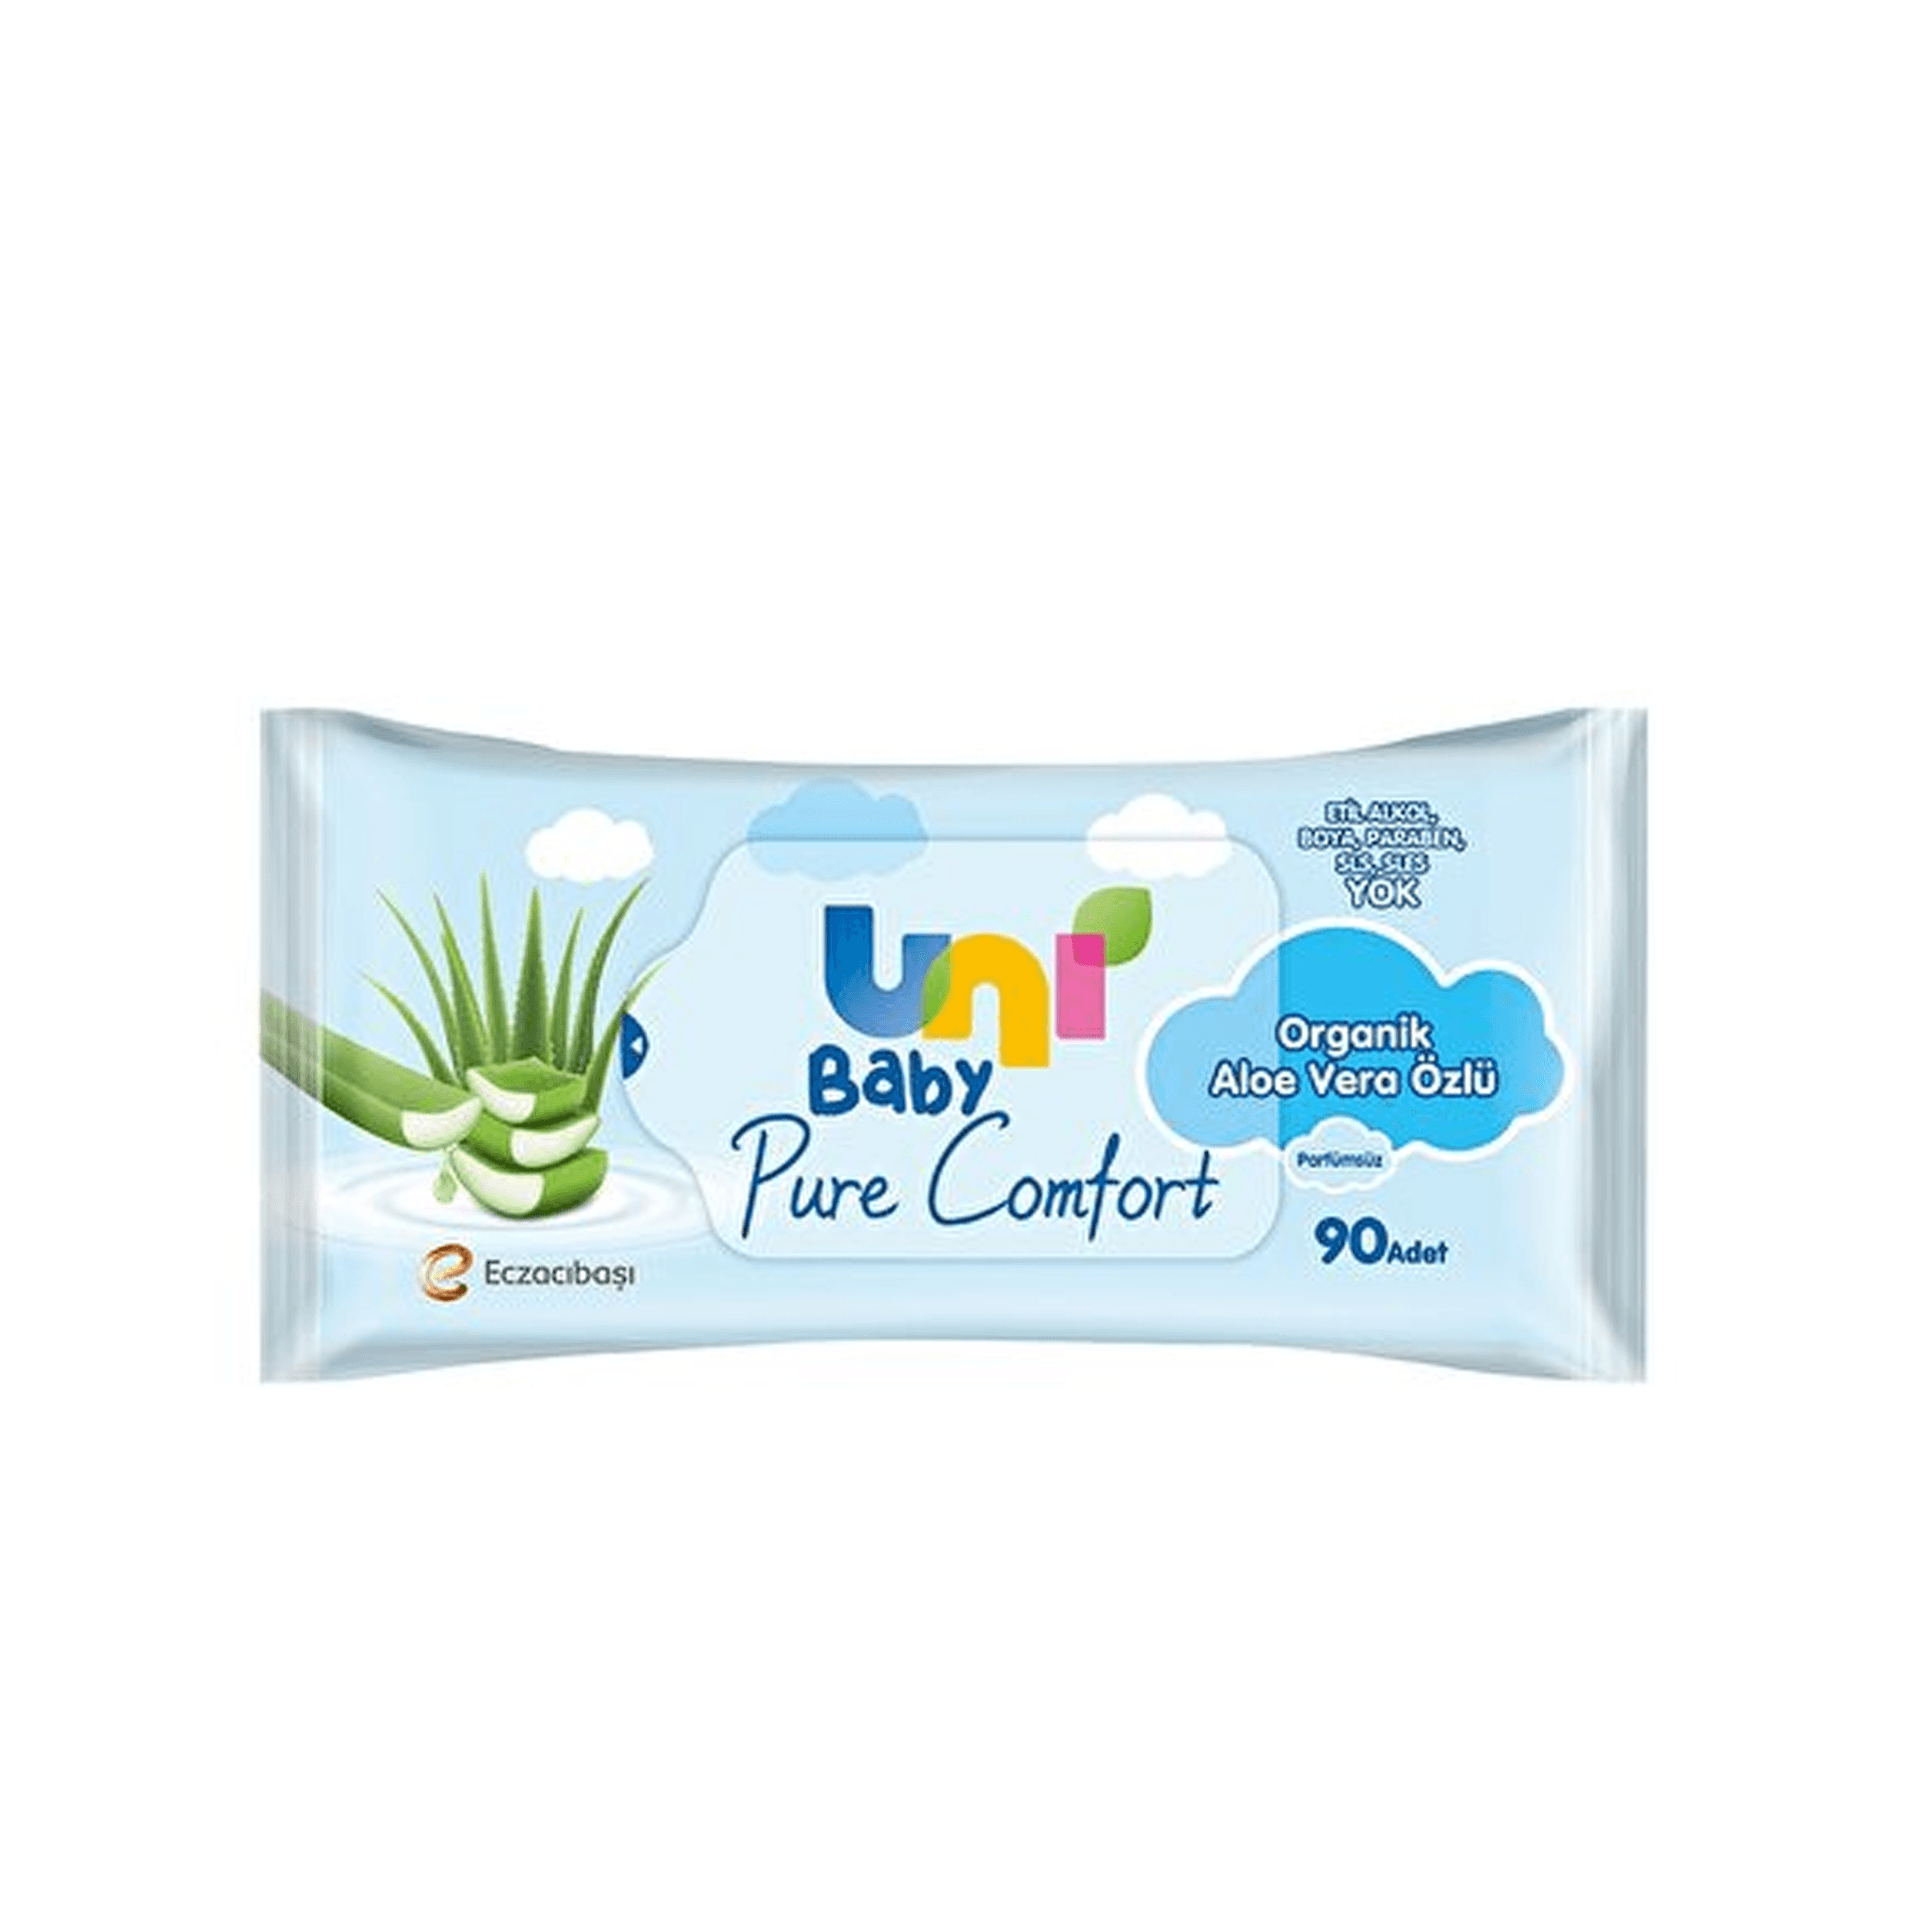 Uni Baby Pure Comfort Organik Aloe Vera Özlü Islak Mendil 12'Li 1080 Yaprak